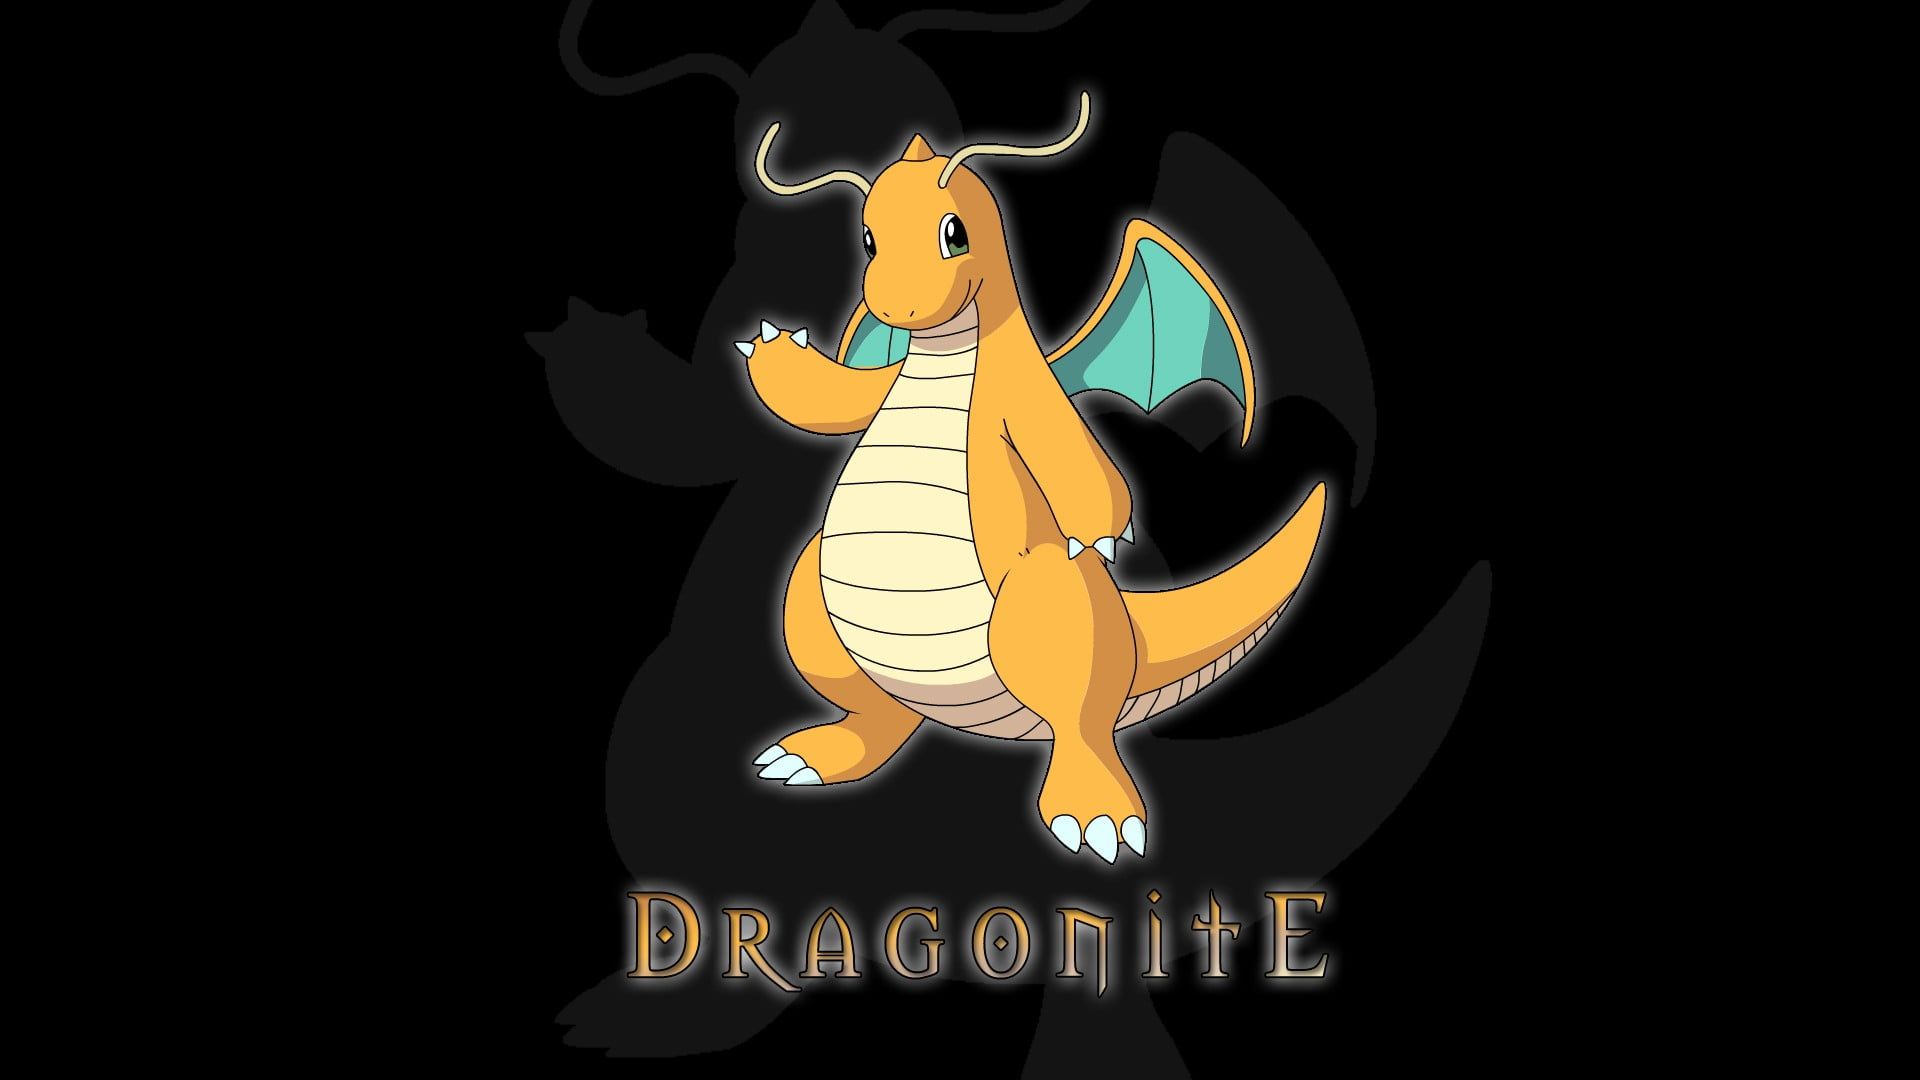 Dragonite #Pokémon P #wallpaper #hdwallpaper #desktop. Pokemon, HD wallpaper, Dark art photography